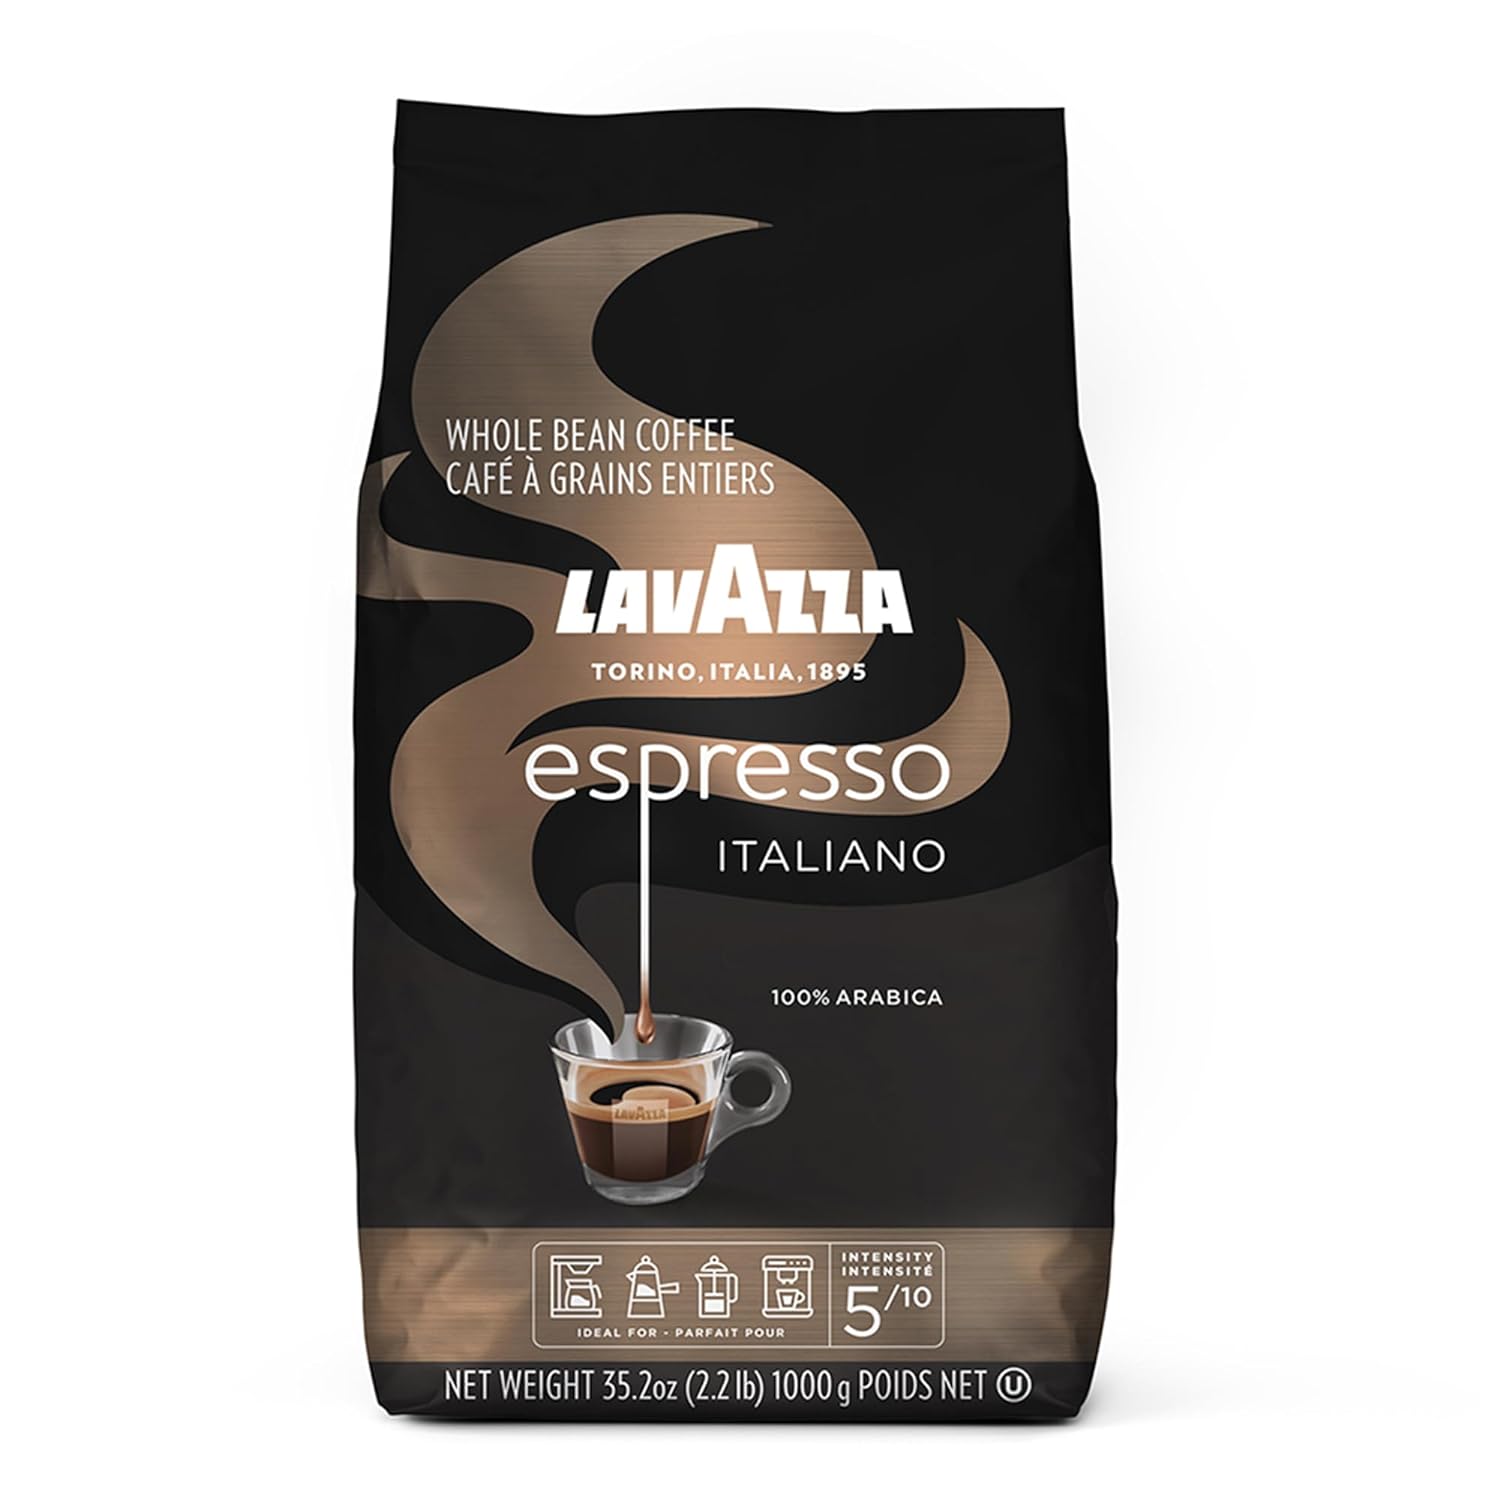 Lavazza espresso Coffee beans